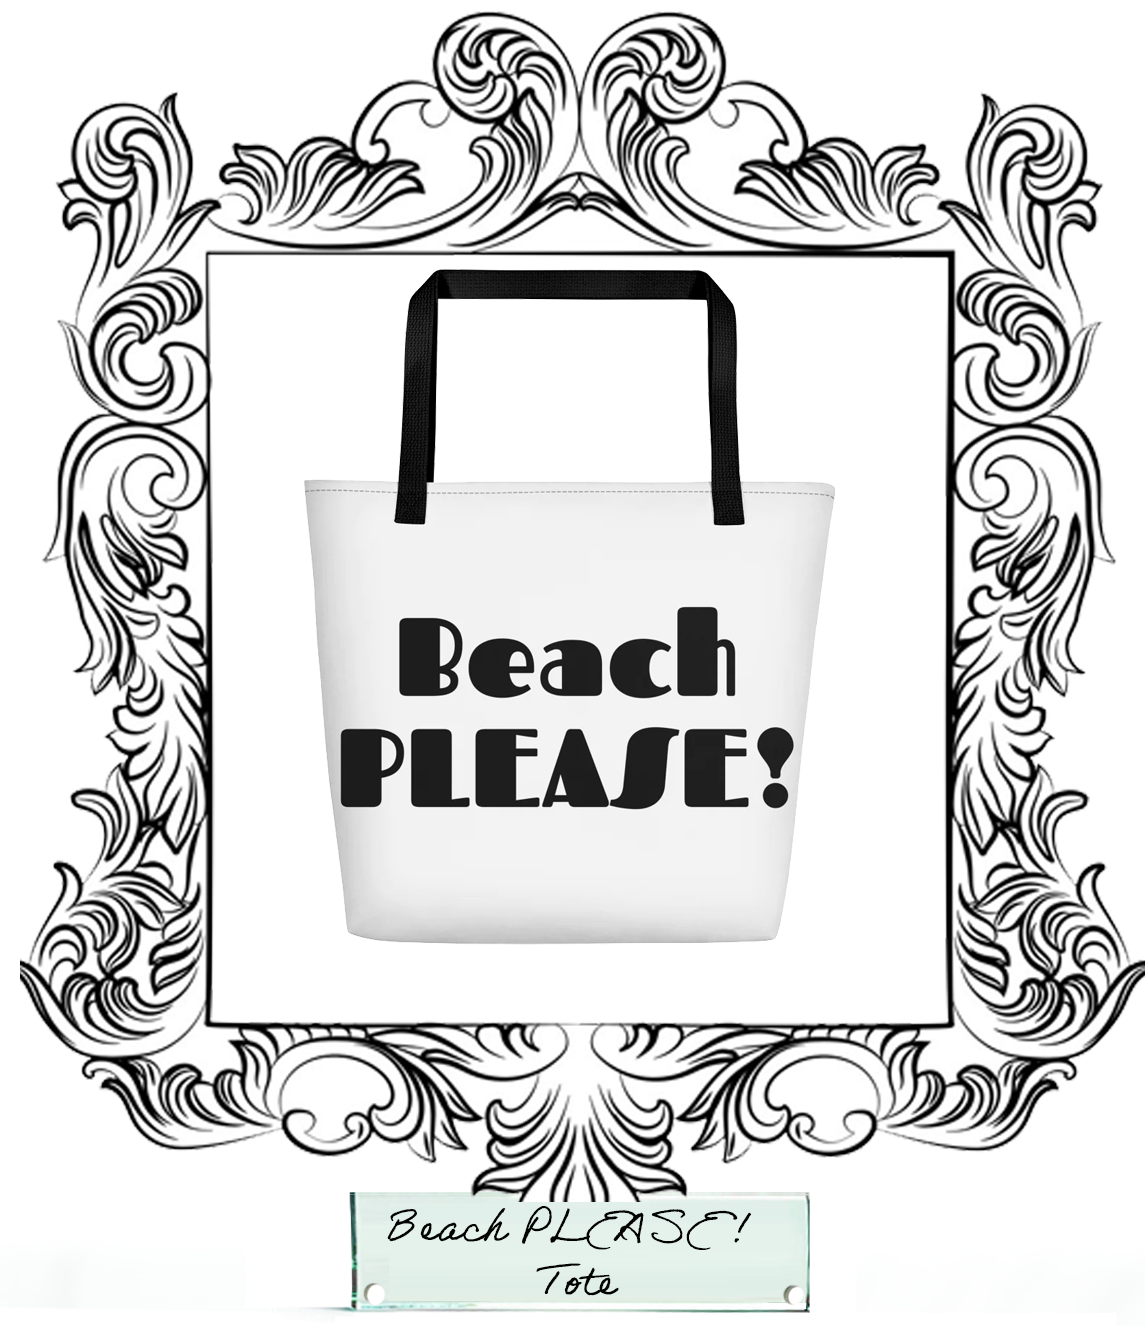 Beach Please!